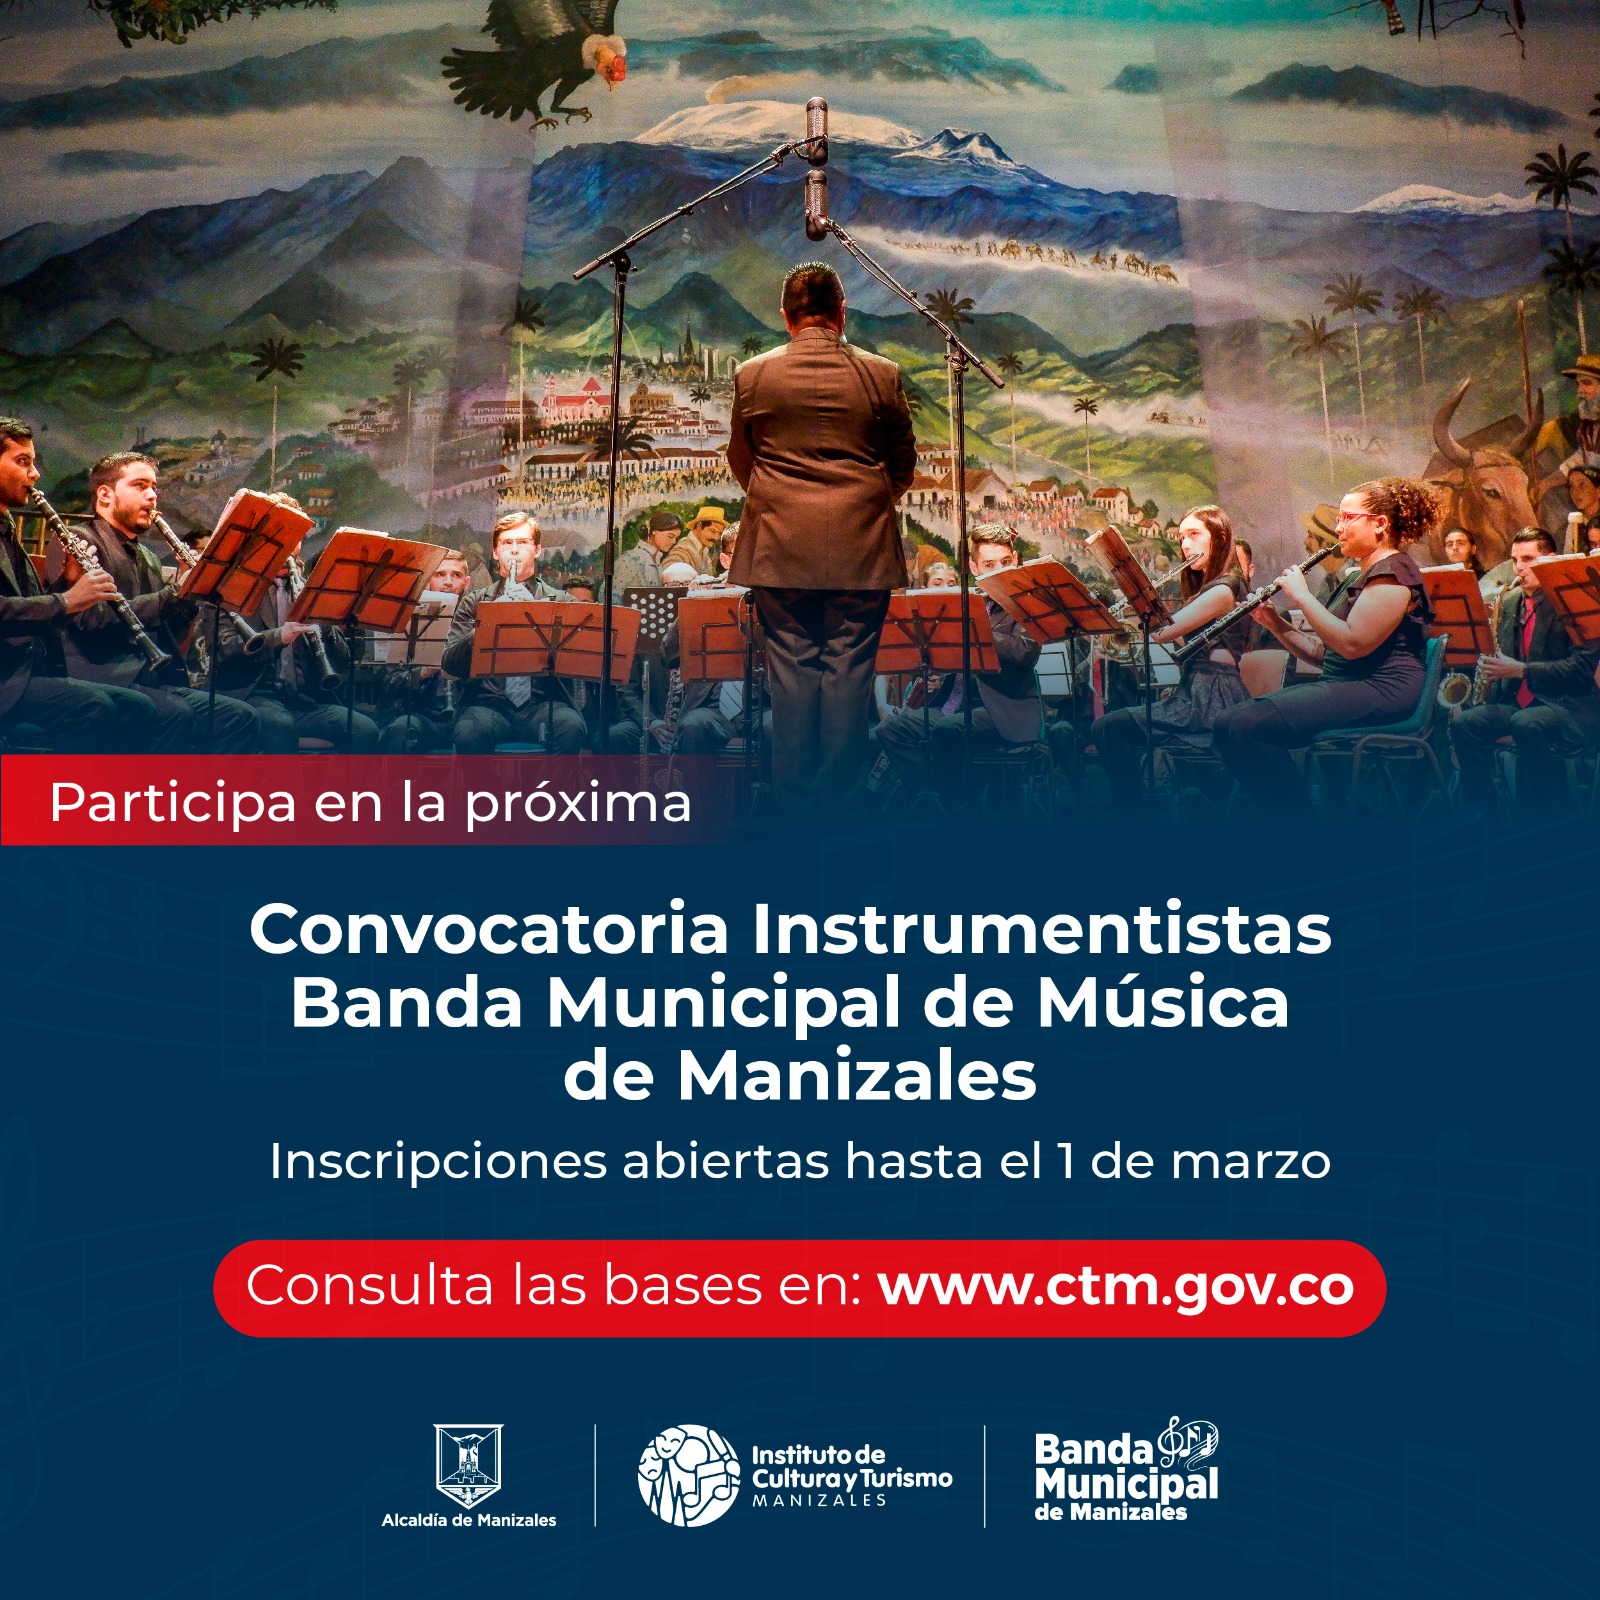 convocatoria abierta para instrumentistas que deseen formar parte de la Banda Municipal de Manizales